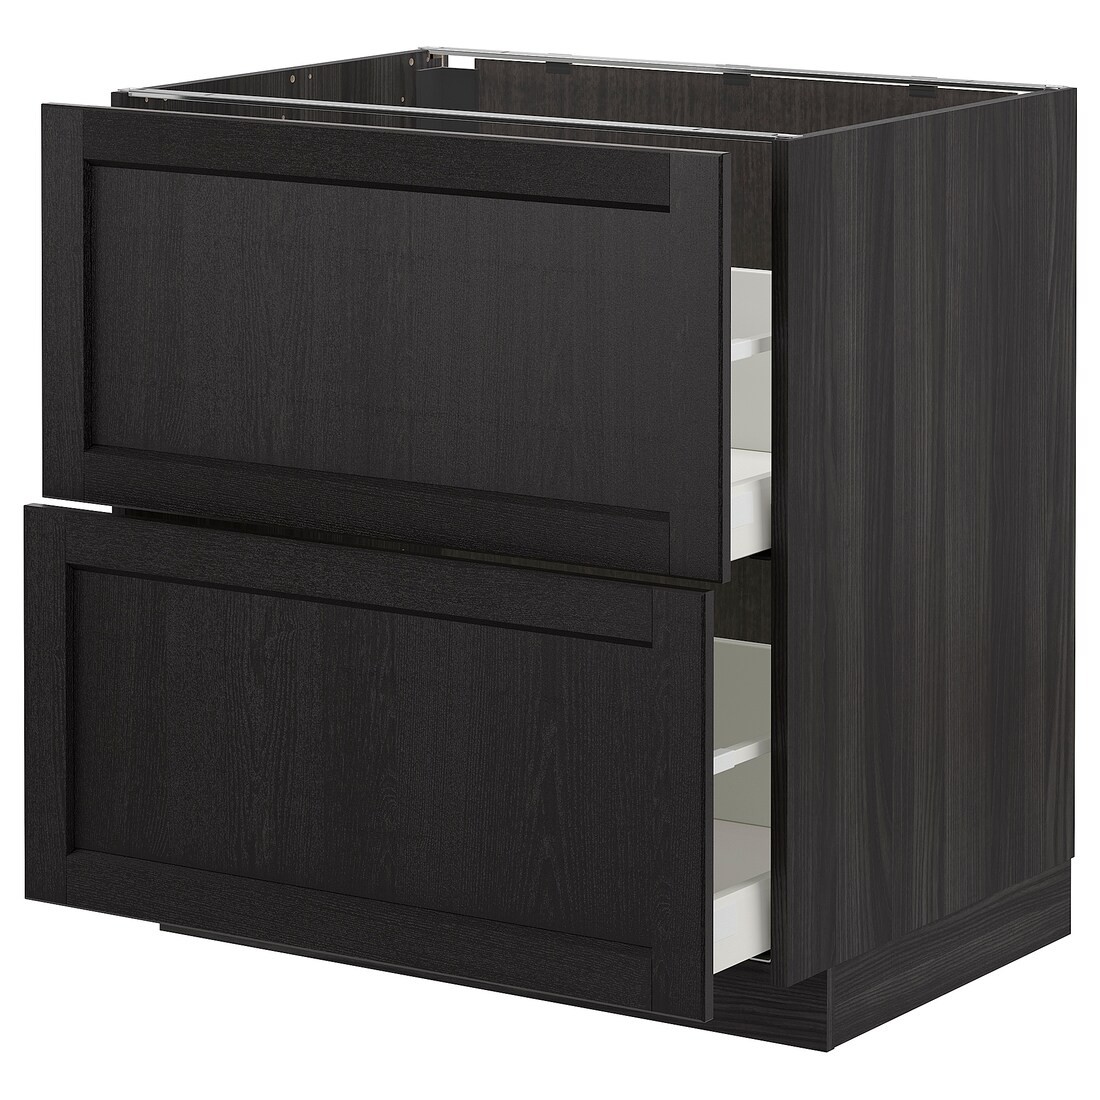 IKEA METOD МЕТОД / MAXIMERA МАКСИМЕРА Напольный шкаф с ящиками, черный / Lerhyttan черная морилка, 80x60 см 69260284 | 692.602.84